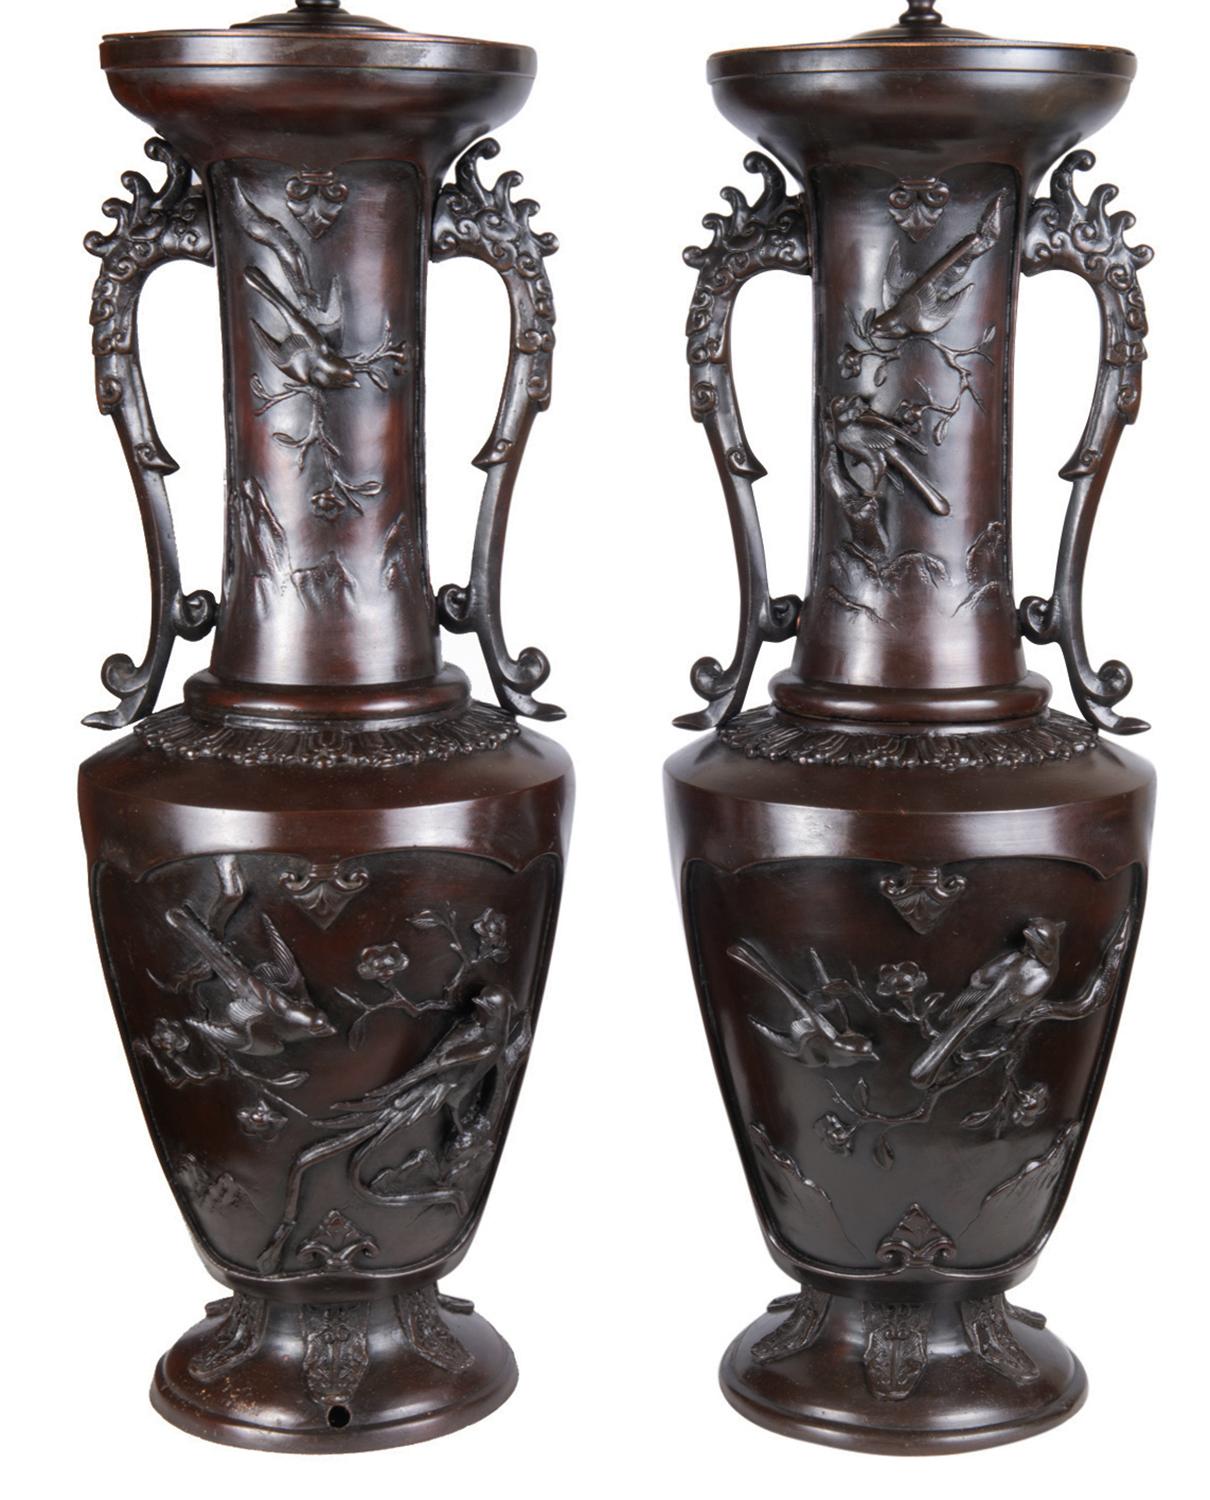 Une paire très impressionnante et frappante de vases / lampes en bronze patiné et gaufré du 19ème siècle (période Meiji 1868-1912). Chacune d'elles comporte des panneaux d'oiseaux et de plantes exotiques, ainsi que des poignées ressemblant à des